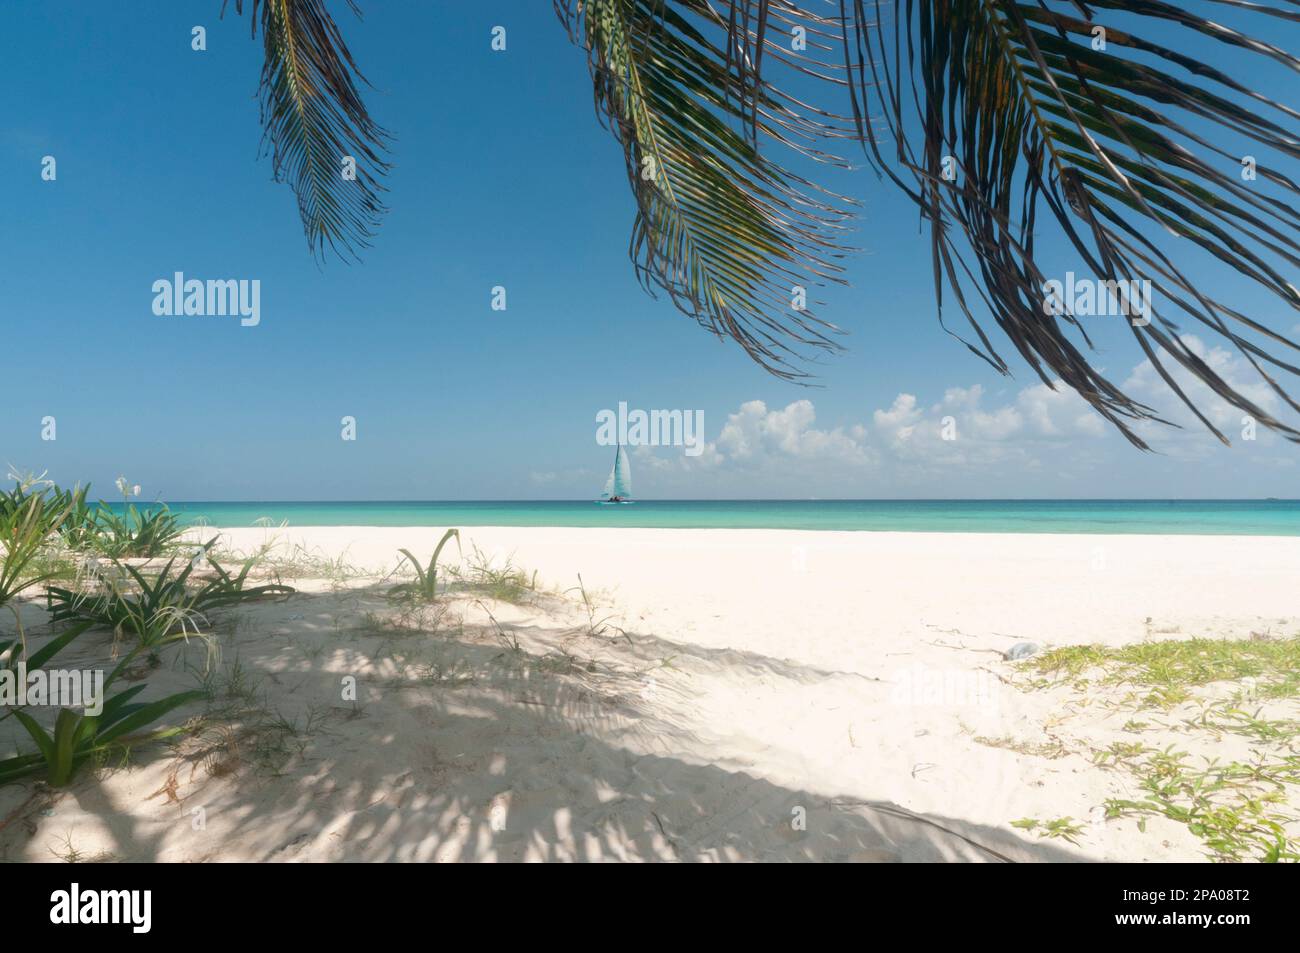 Spiaggia tropicale con palme e sabbia bianca con una barca a vela all'orizzonte. Concetto di vacanza da sogno Foto Stock